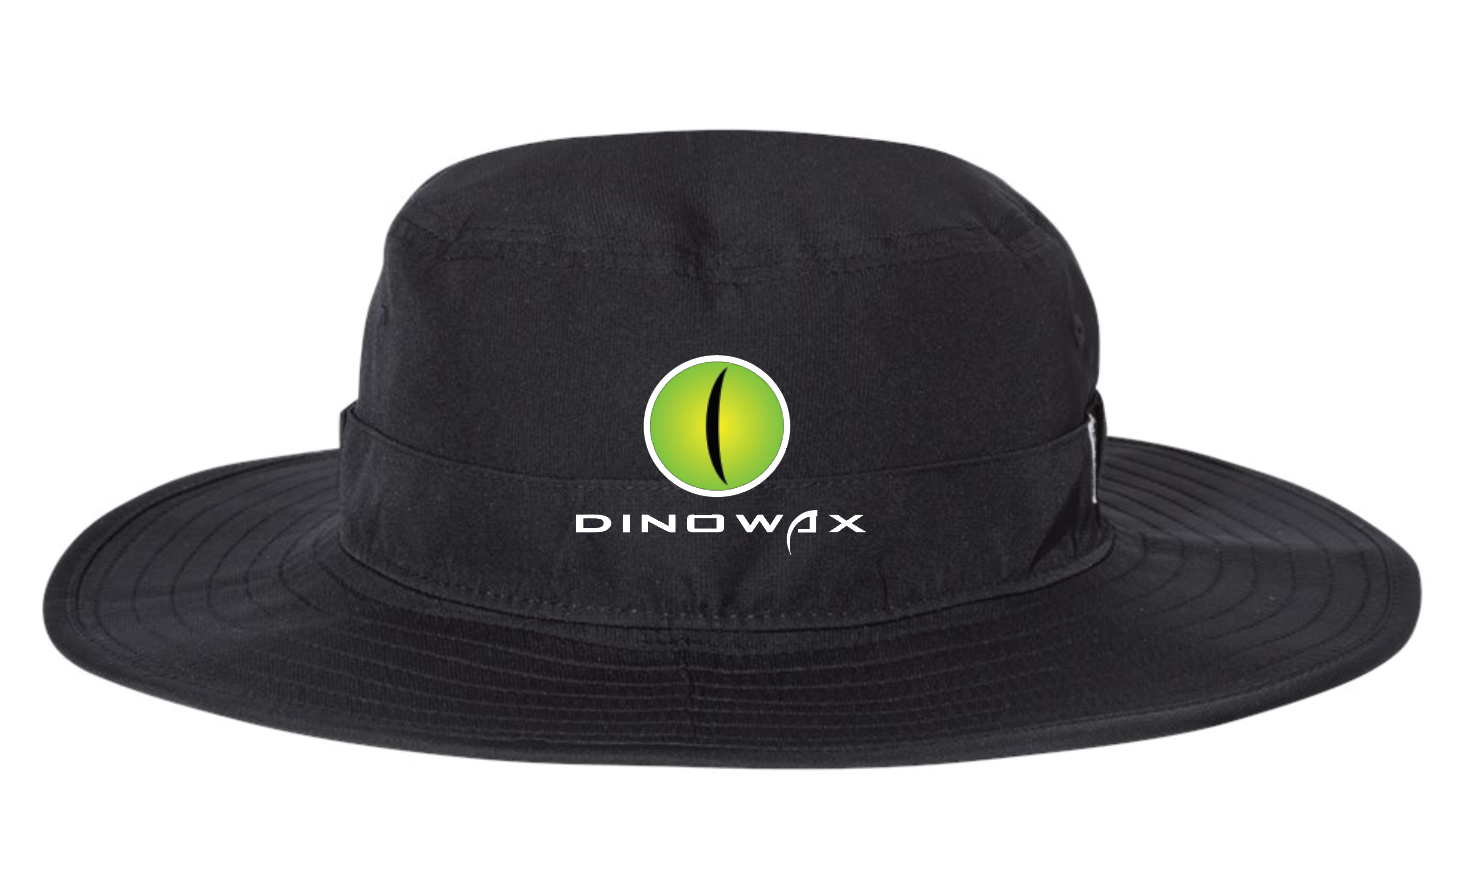 Dinowax Embroidered Wide Brim Bucket Hat